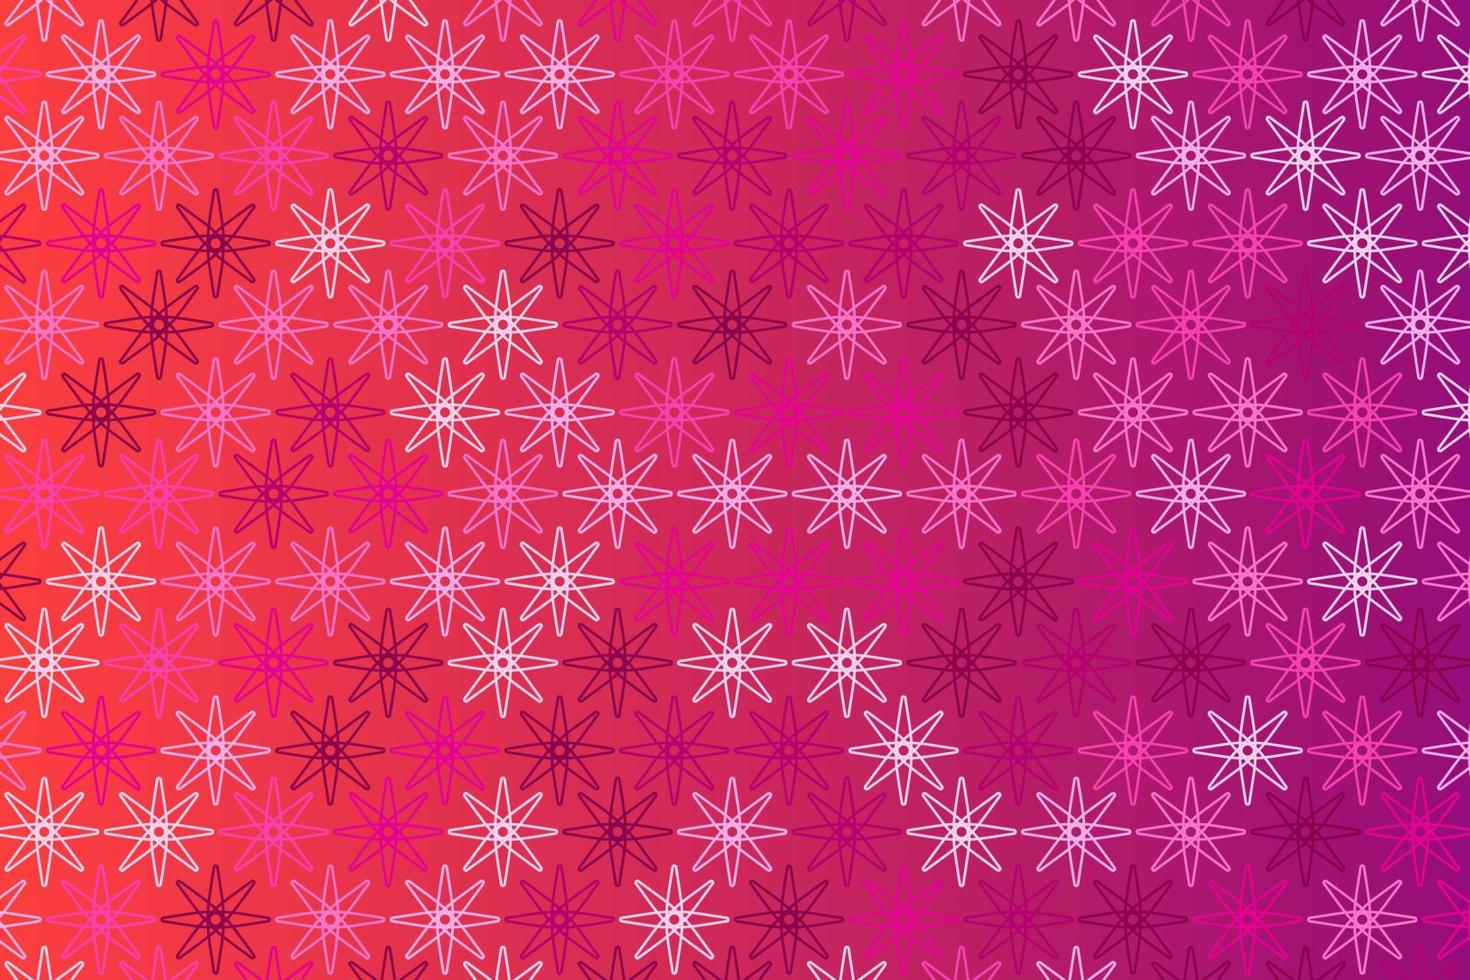 patroon met meetkundig elementen in roze tonen, abstract helling achtergrond vector